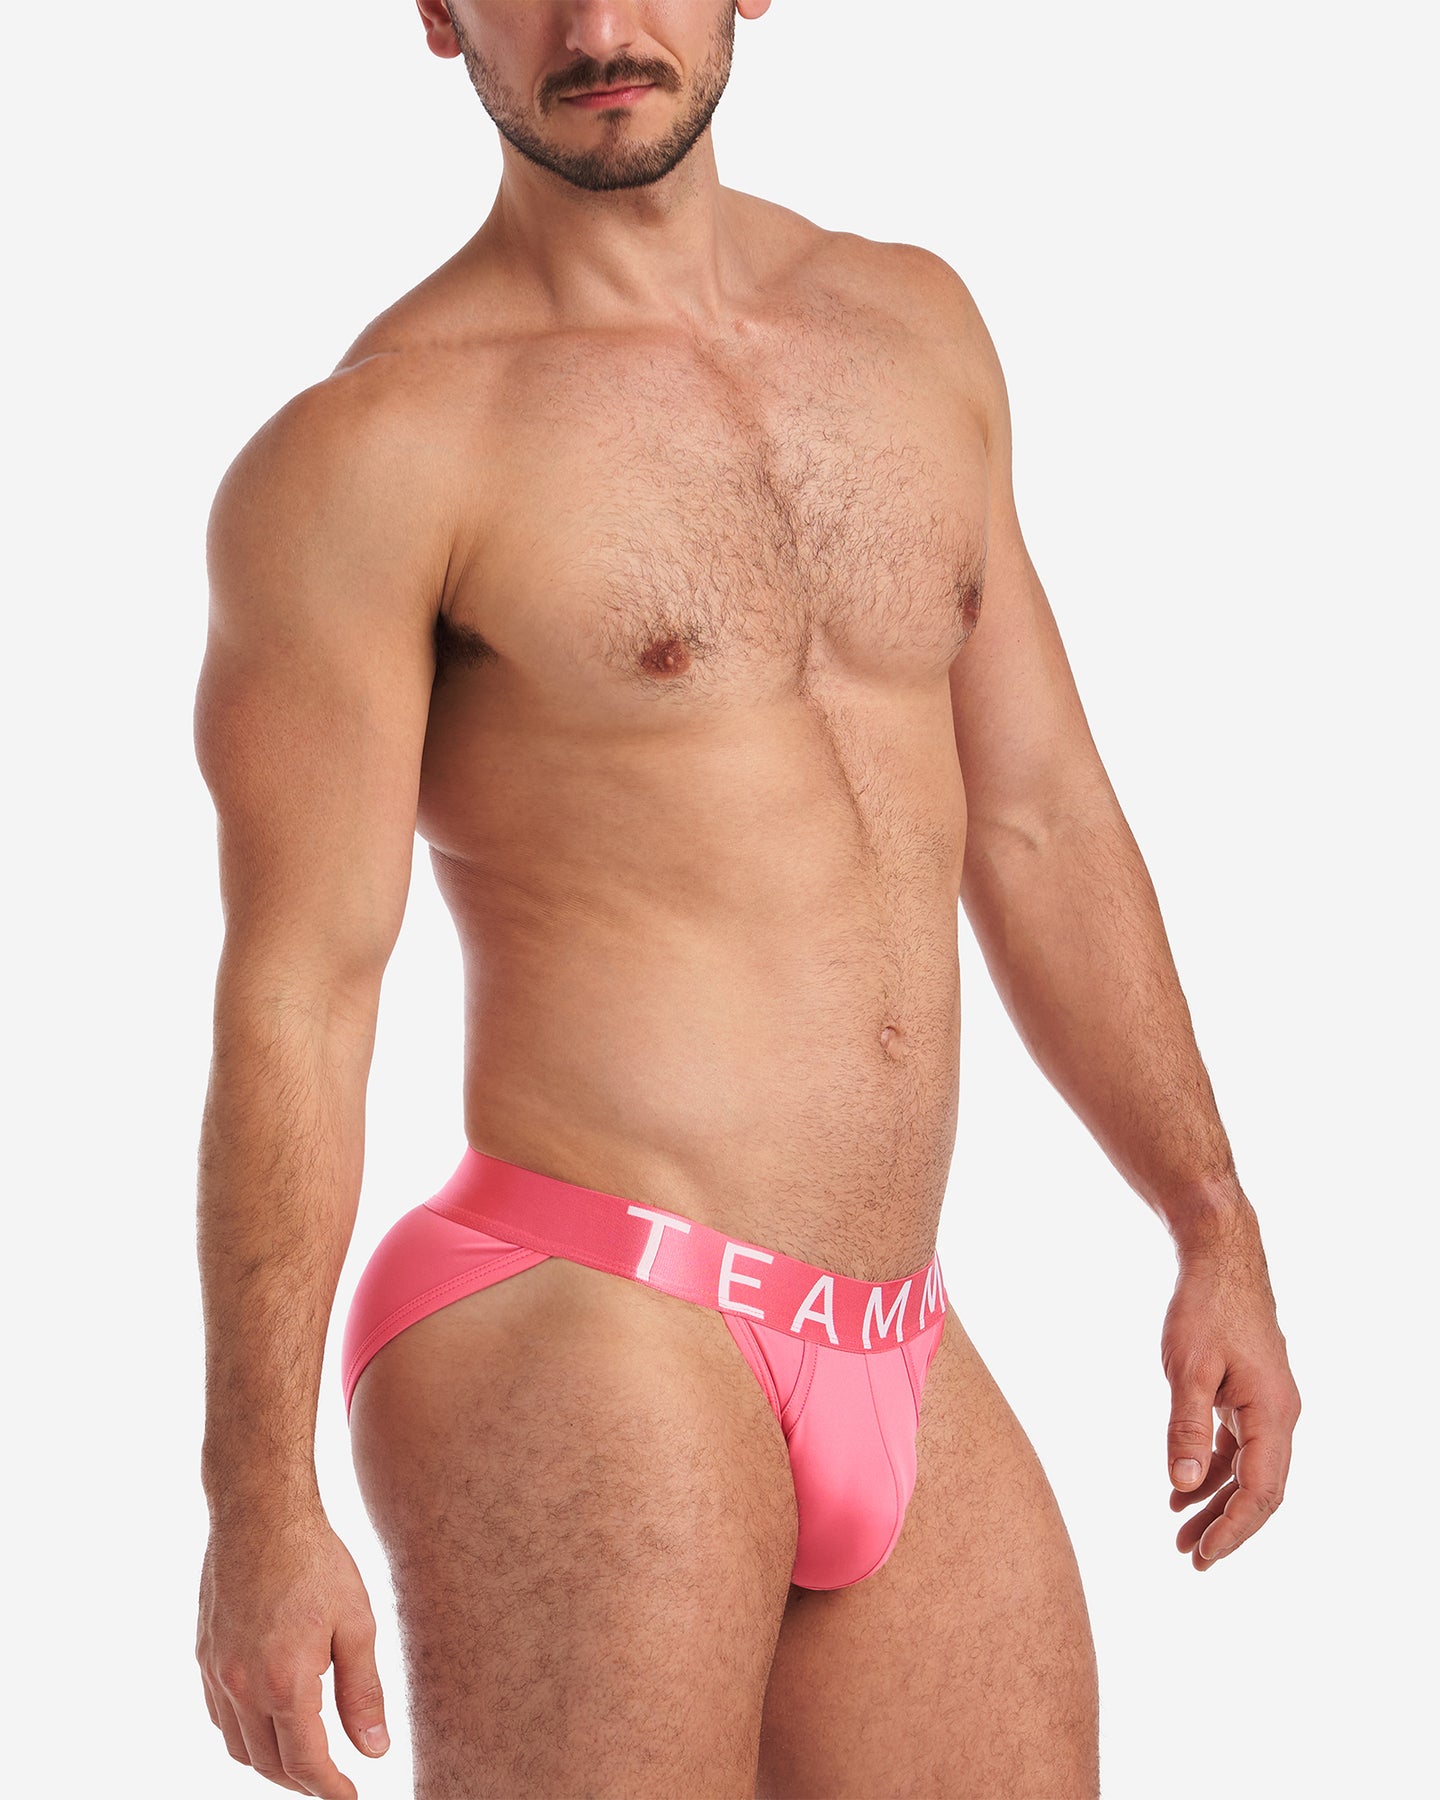 Spartacus Brief 2.0 - Hot Pink, Men's Underwear Briefs